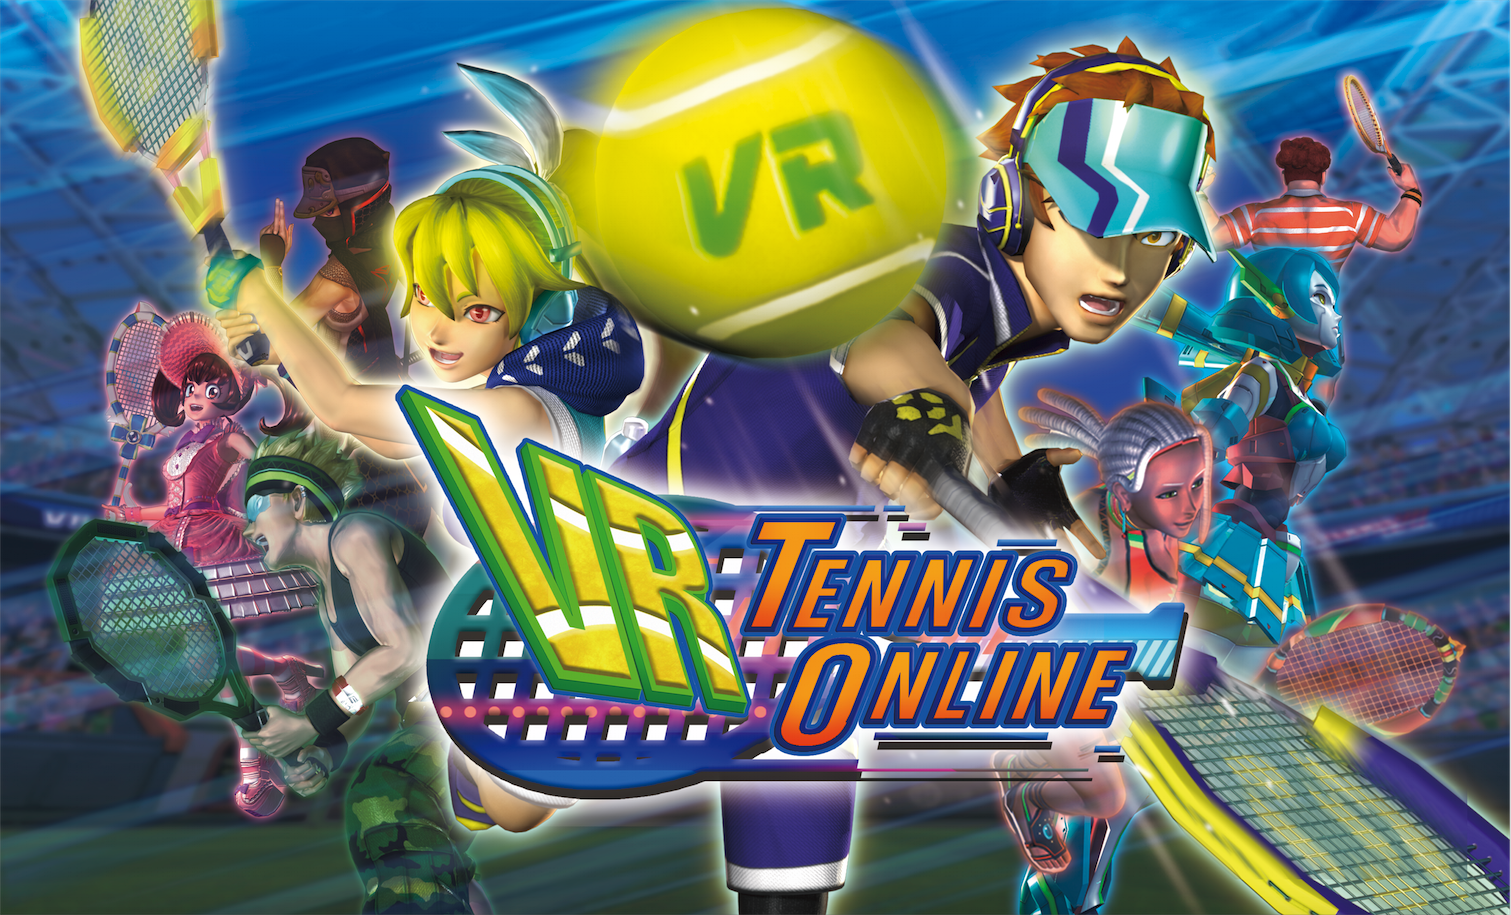 VR Tennis Online - Oculus Rift